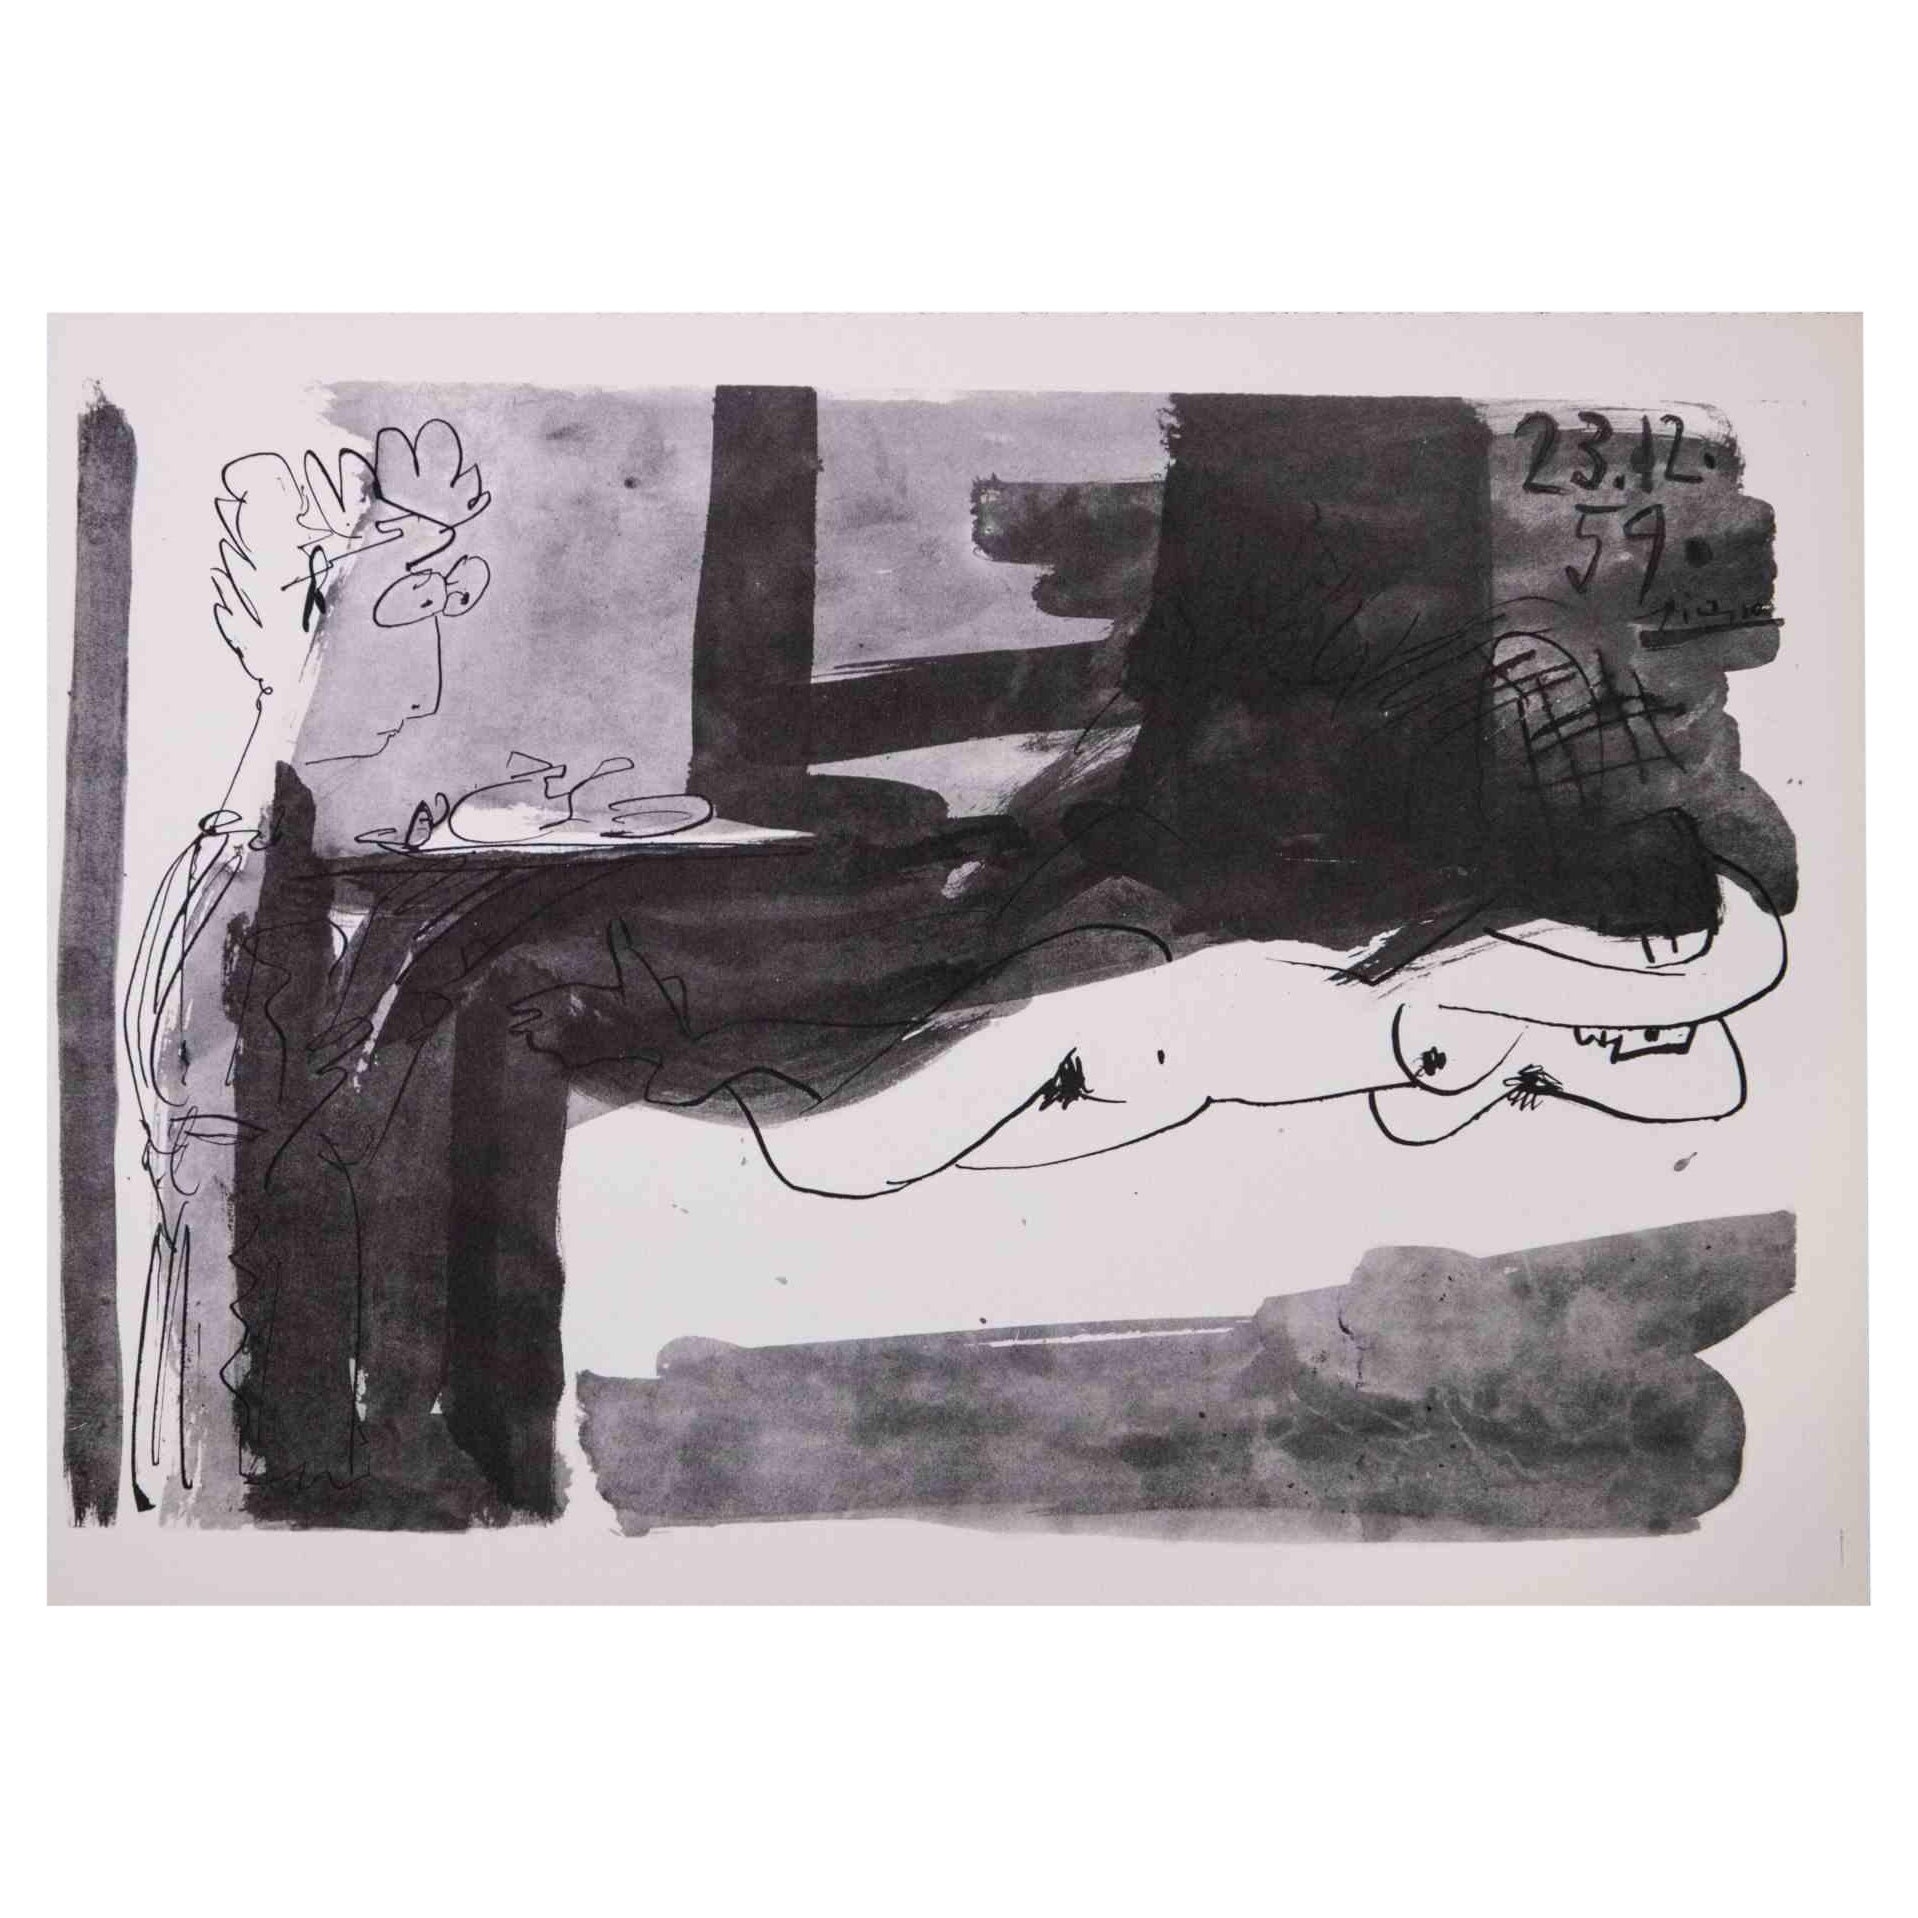 (after) Pablo Picasso Figurative Print - Le Petit Dejeuner - Photolithograph after Pablo Picasso - 1959